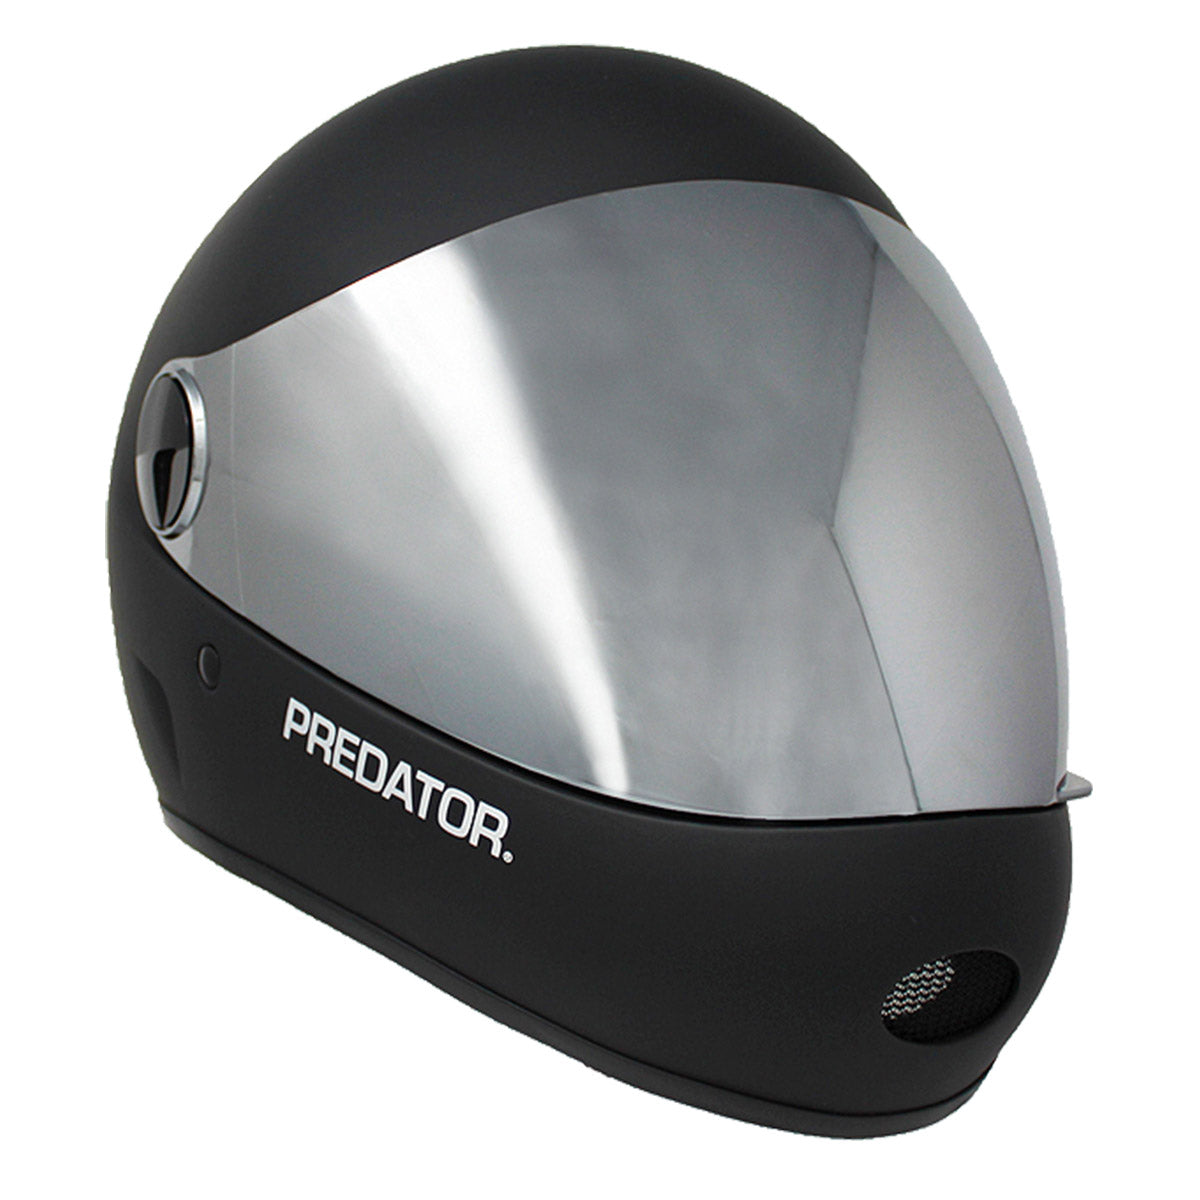 Predator DH6-Xg Helmet